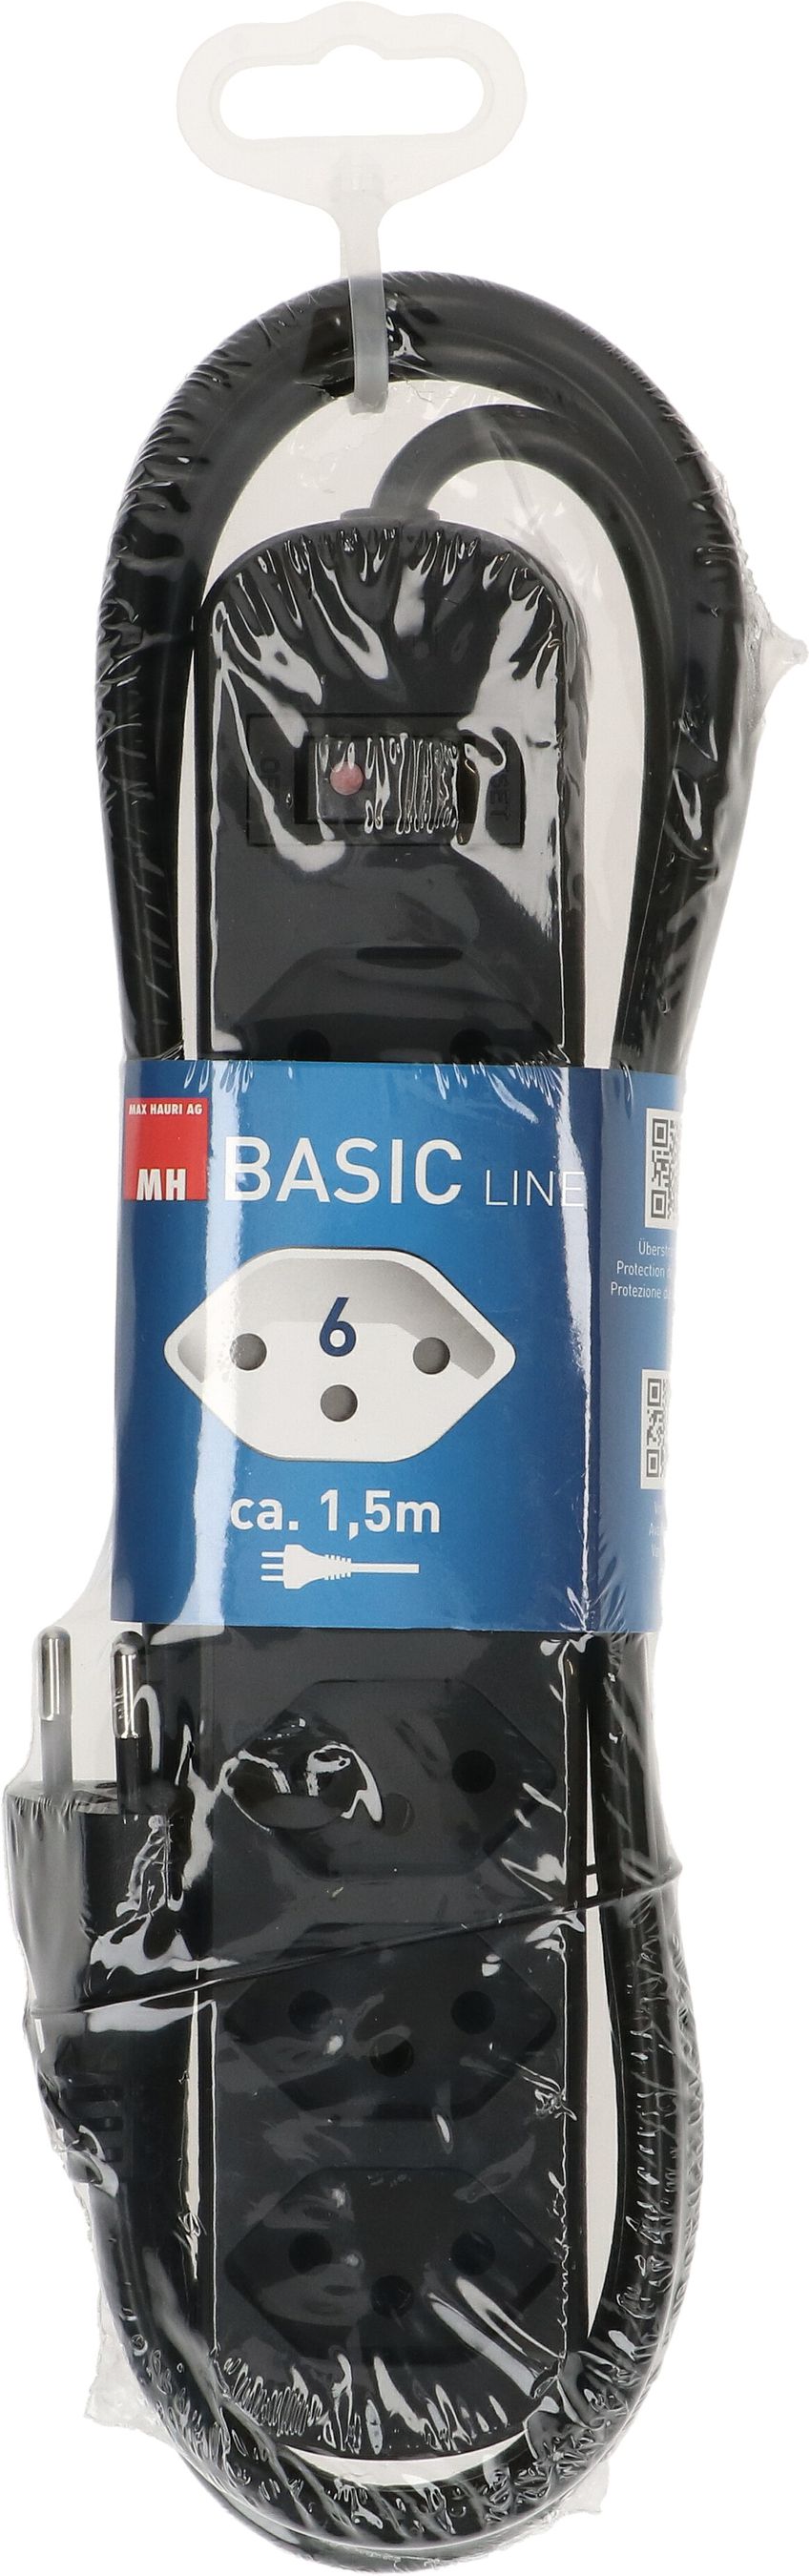 Steckdosenleiste Basic Line 6x Typ 13 schwarz Schalter 1.5m